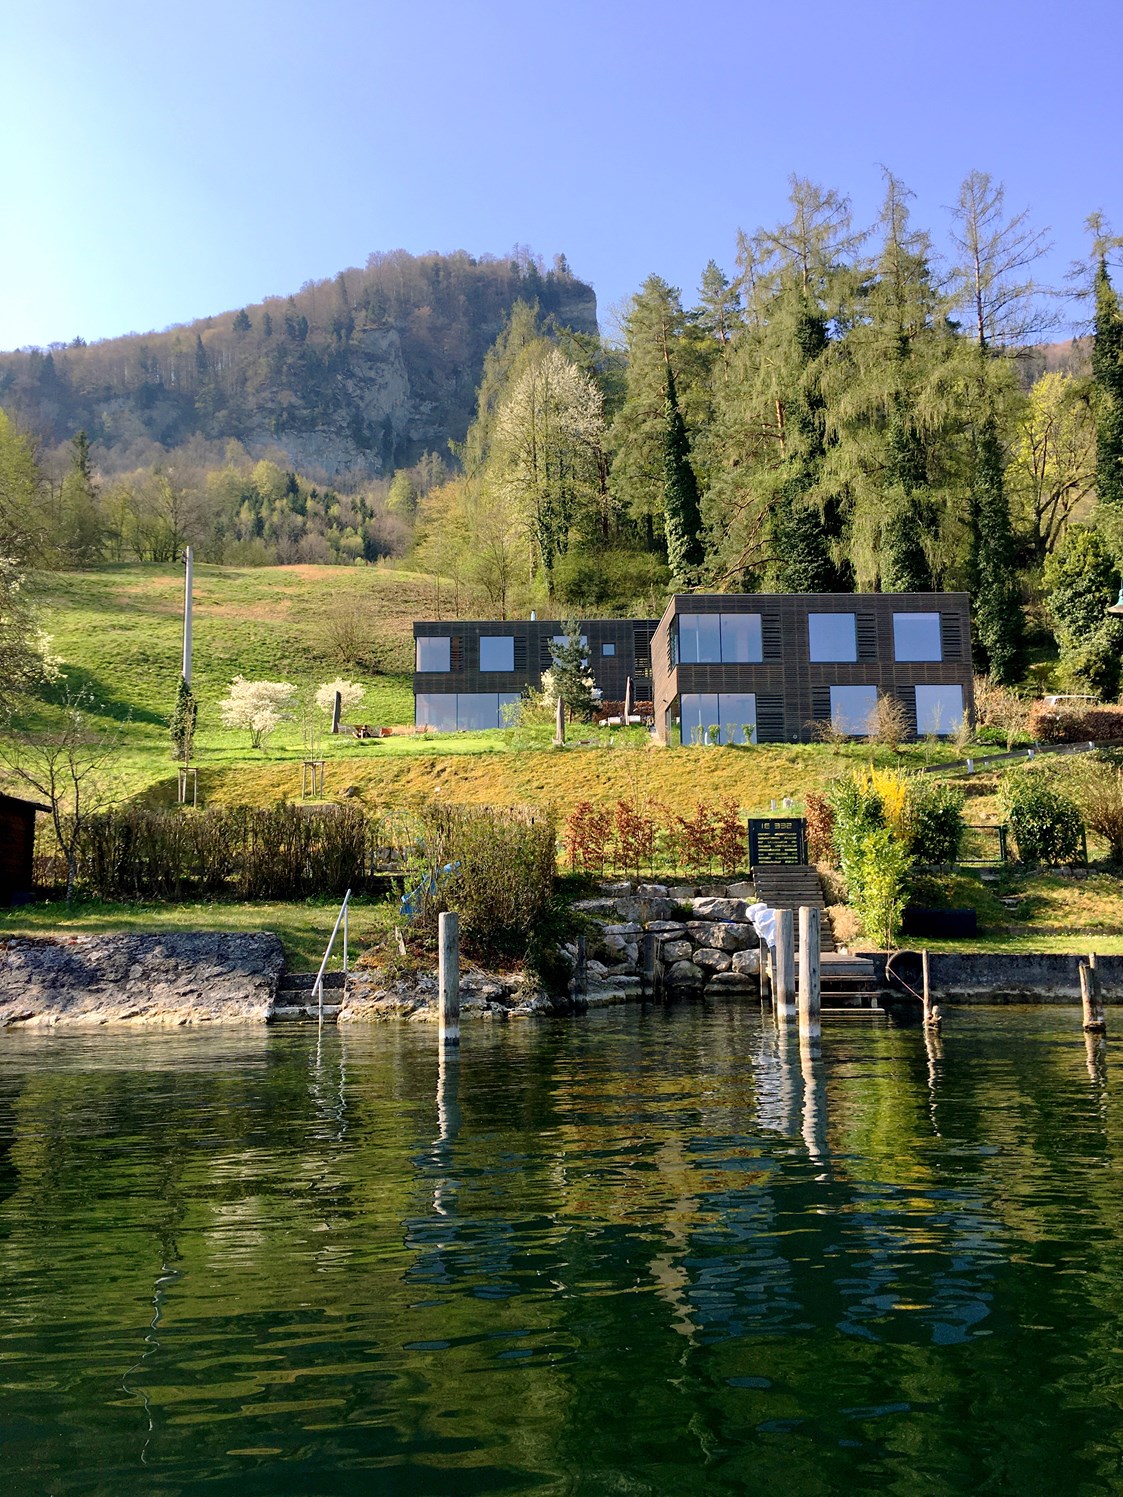 Urlaub am See: Holzhäuser in der Blumenwiese - SEE 31, Ferienlofts am Traunsee